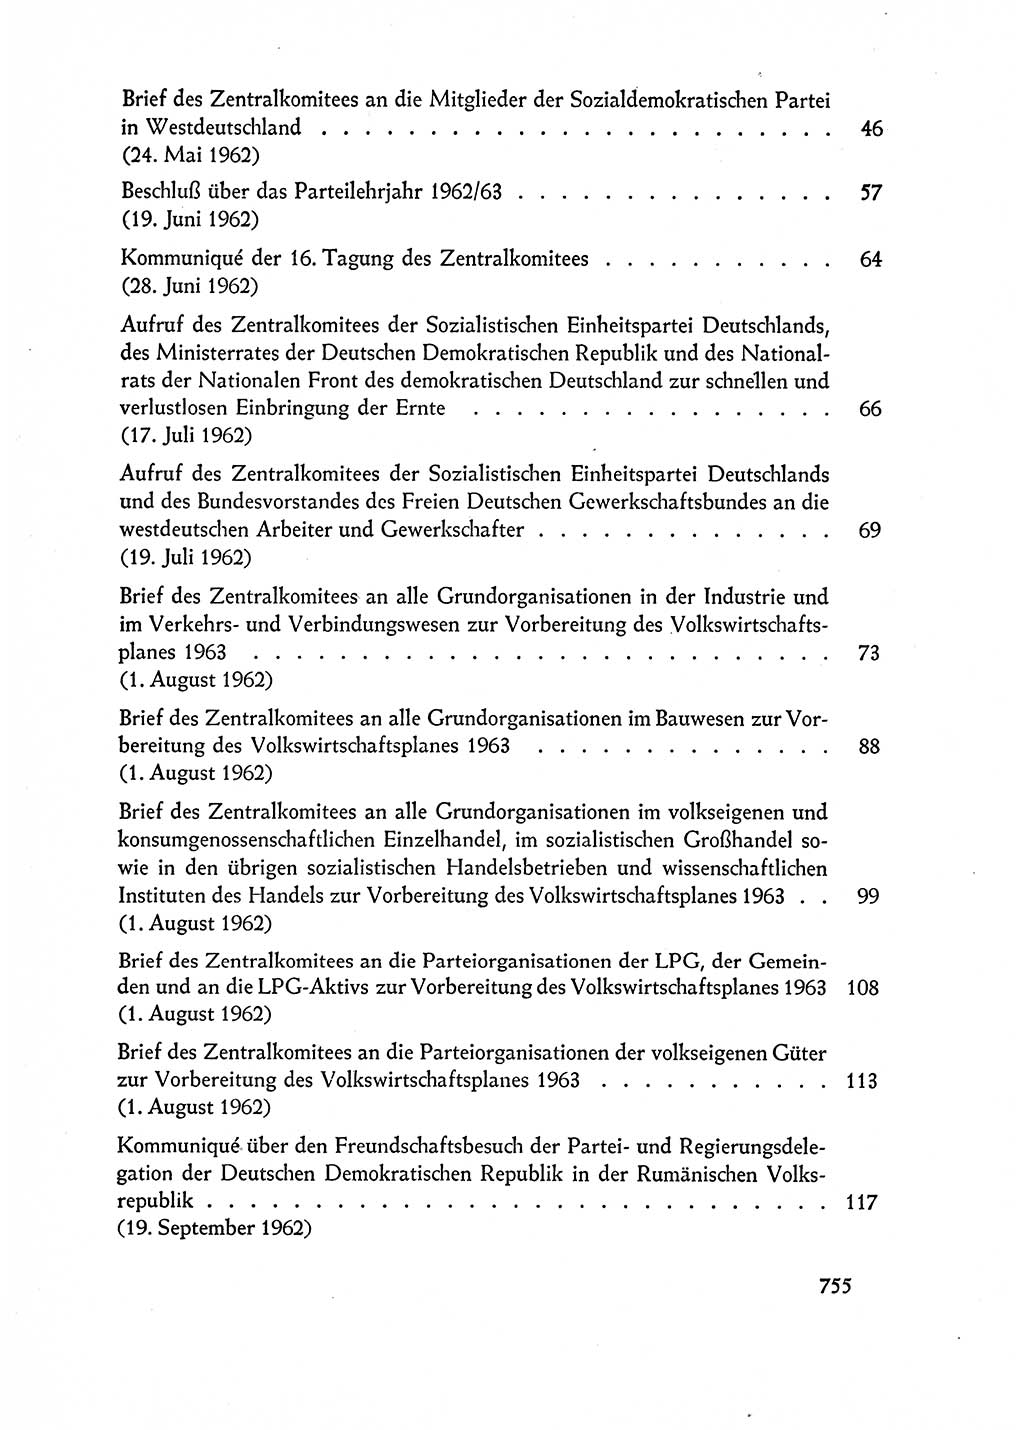 Dokumente der Sozialistischen Einheitspartei Deutschlands (SED) [Deutsche Demokratische Republik (DDR)] 1962-1963, Seite 755 (Dok. SED DDR 1962-1963, S. 755)